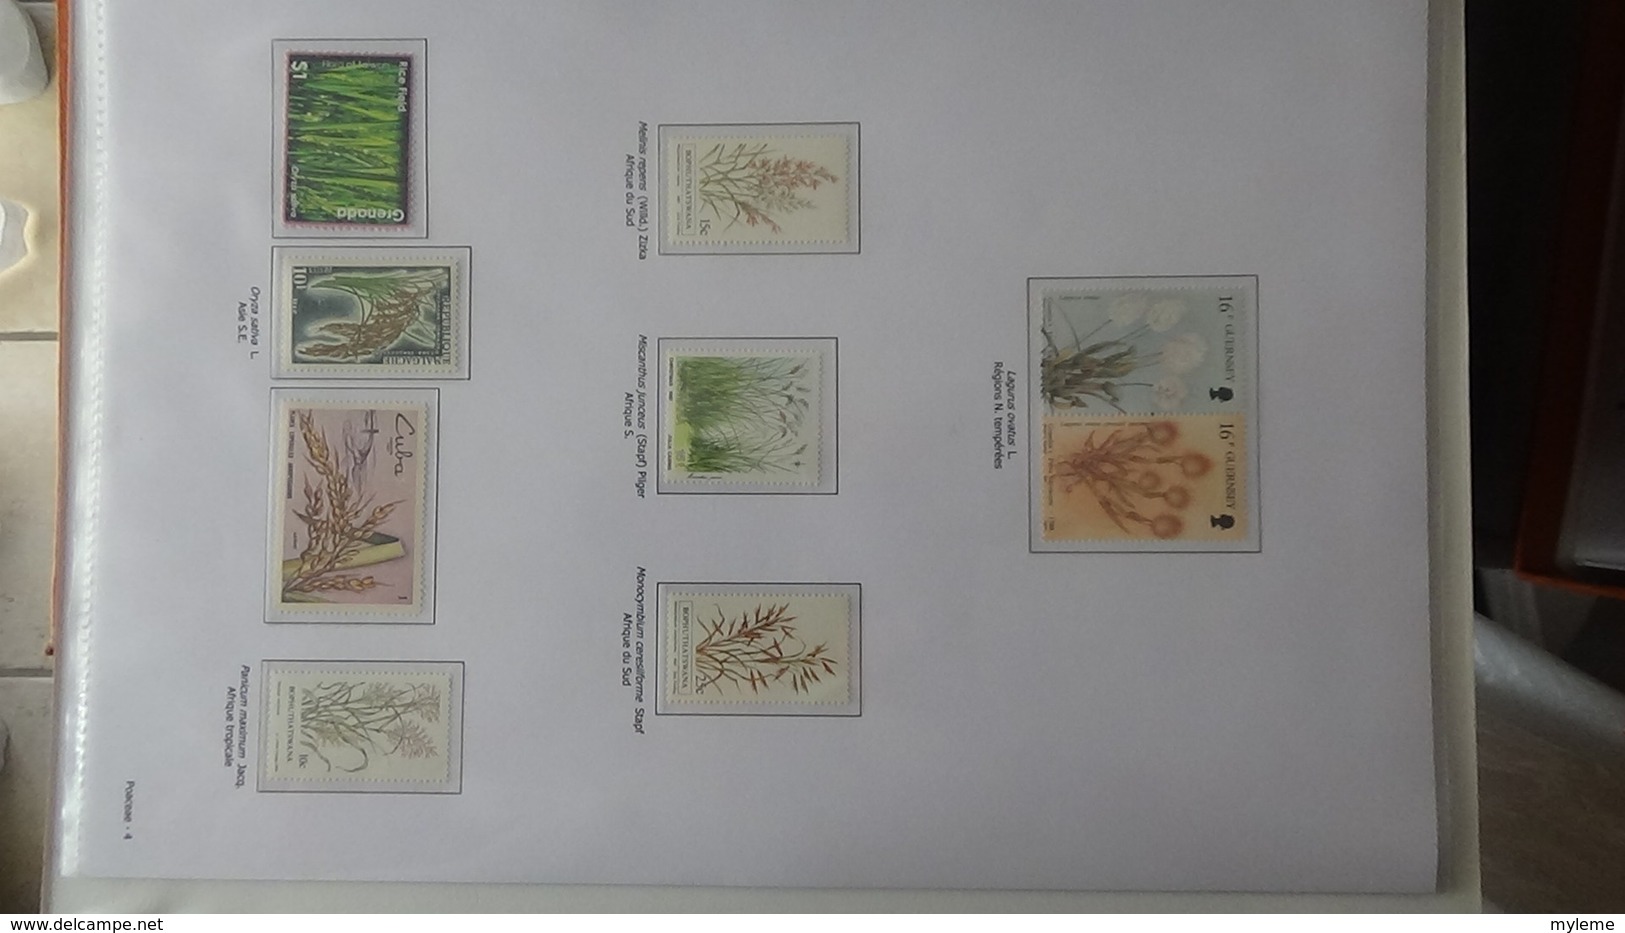 Dispersion d'une grosse collection thématique dont les Plantes Angiospermes Tome 1 . A saisir !!!